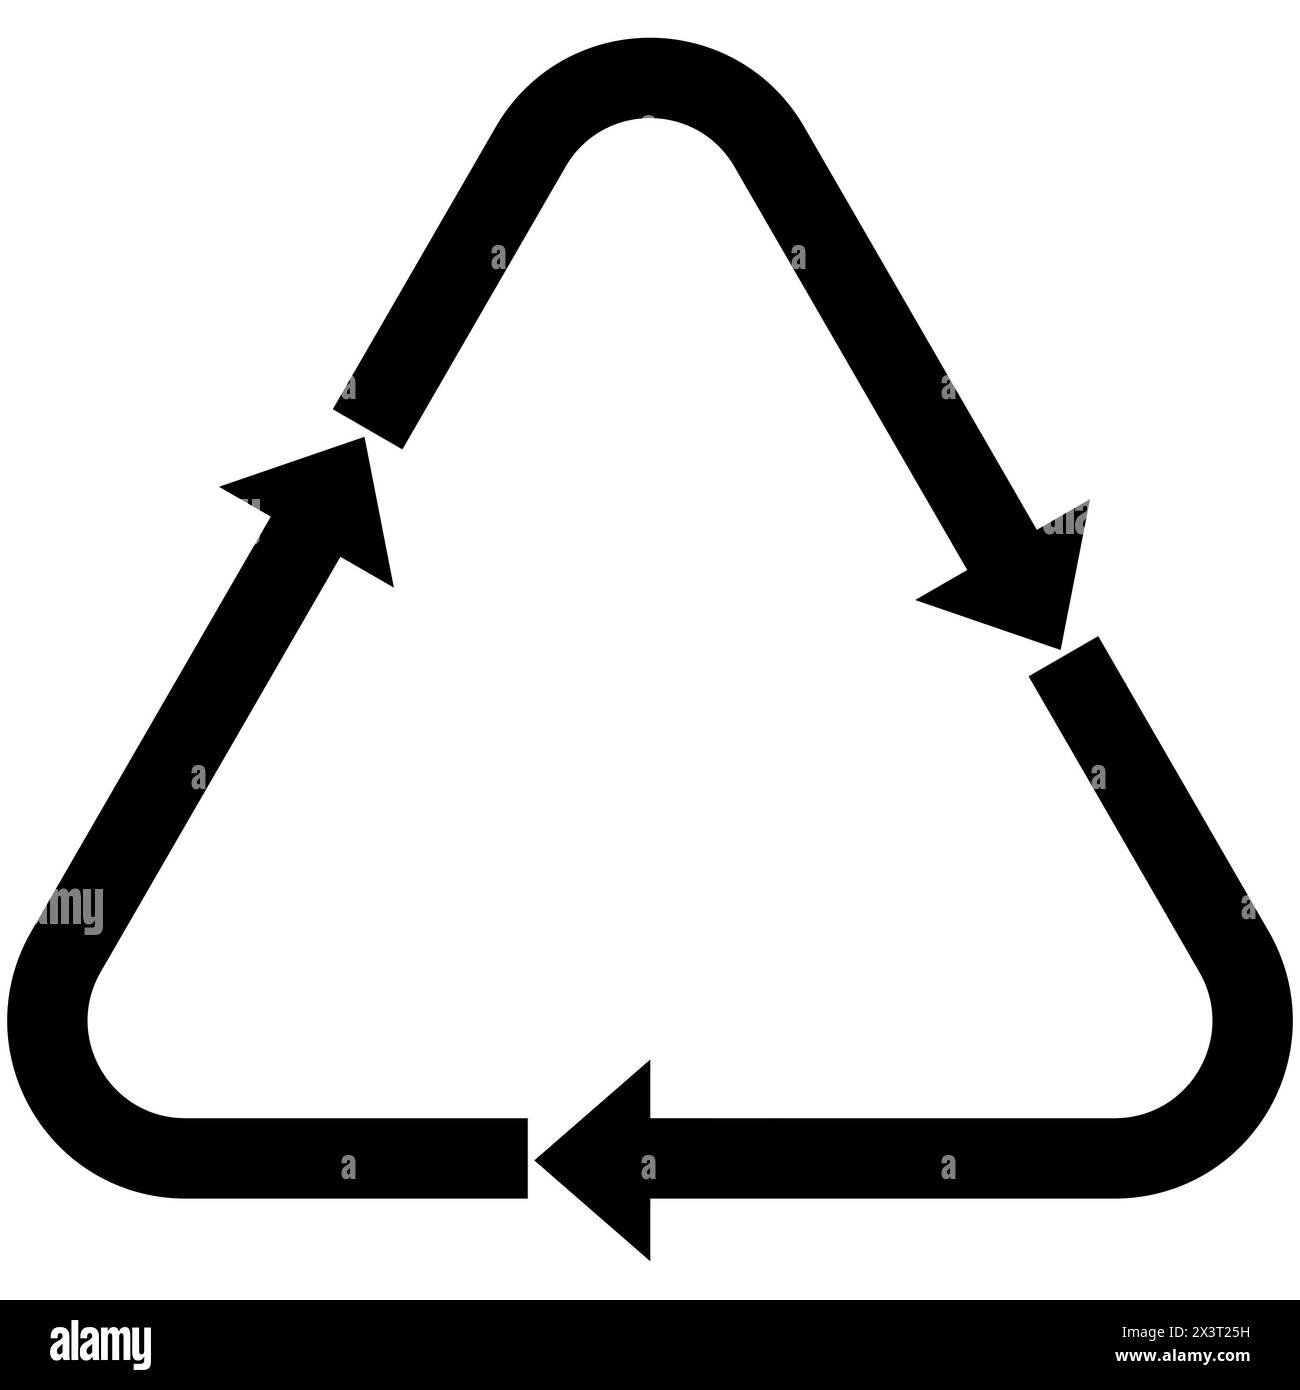 Isoliertes schwarz-weißes Recycling-Symbol für Nachhaltigkeit und Umweltschutz auf einem sauberen, weißen Hintergrund für eine klare Sichtbarkeit. Stockfoto